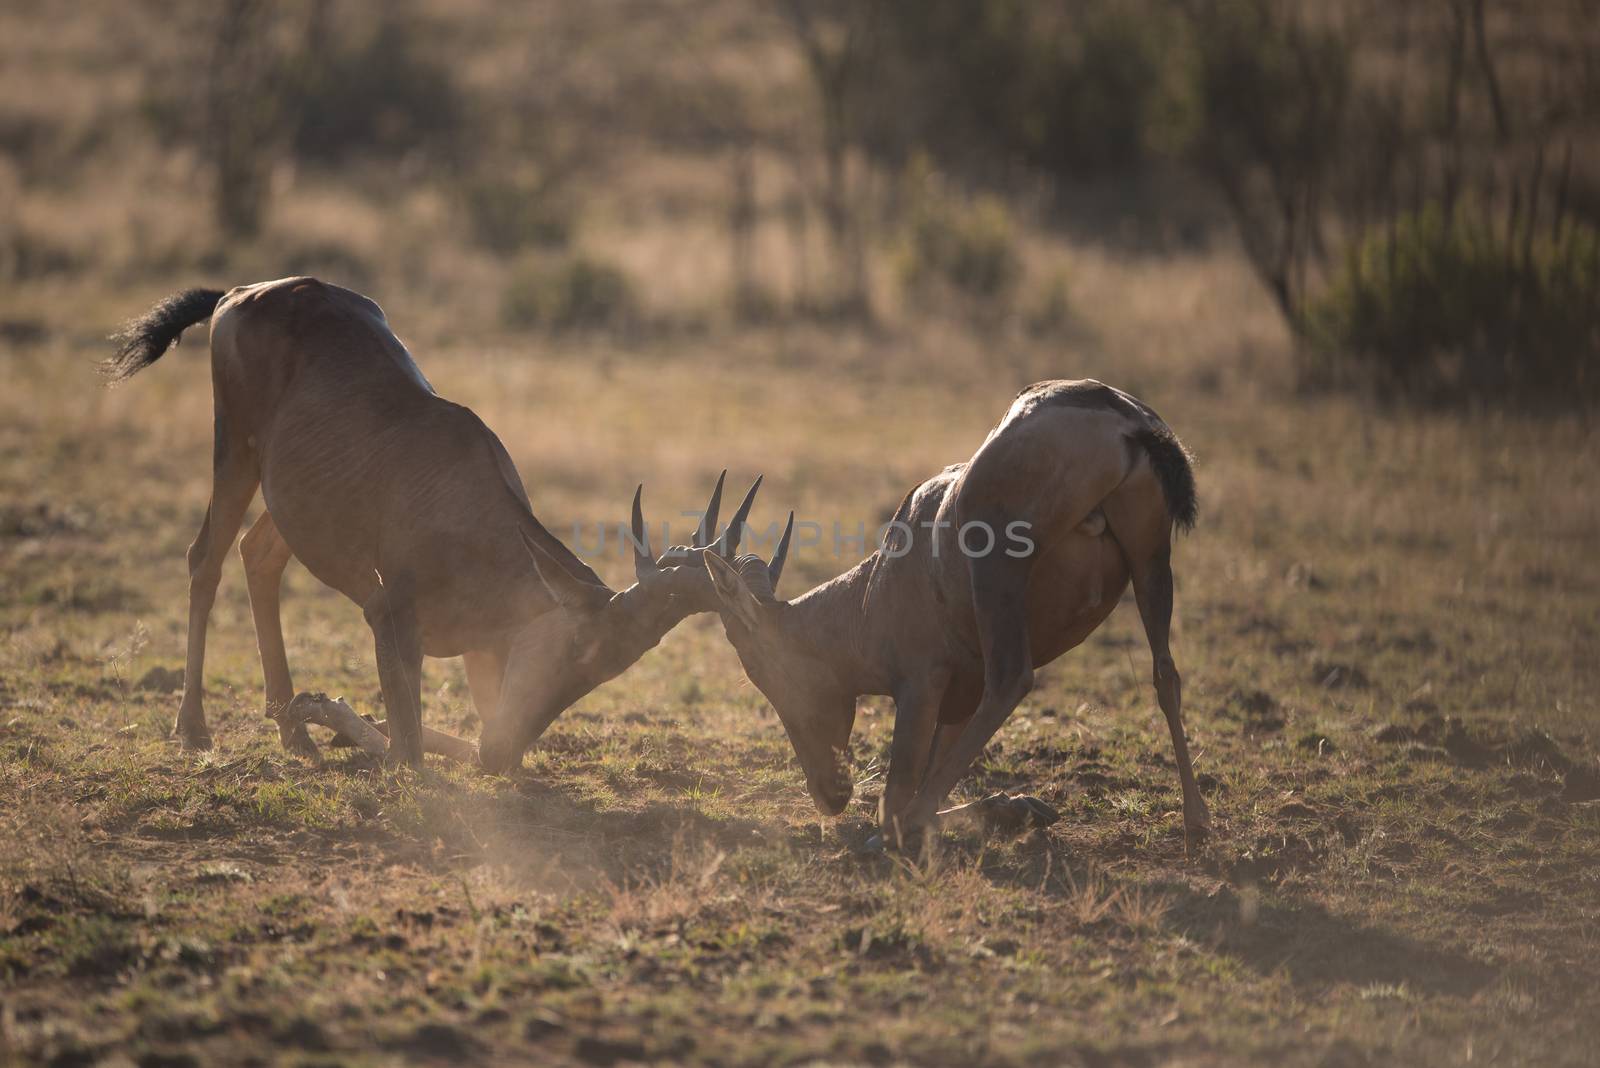 Hartebeest fighting in the wilderness of Africa